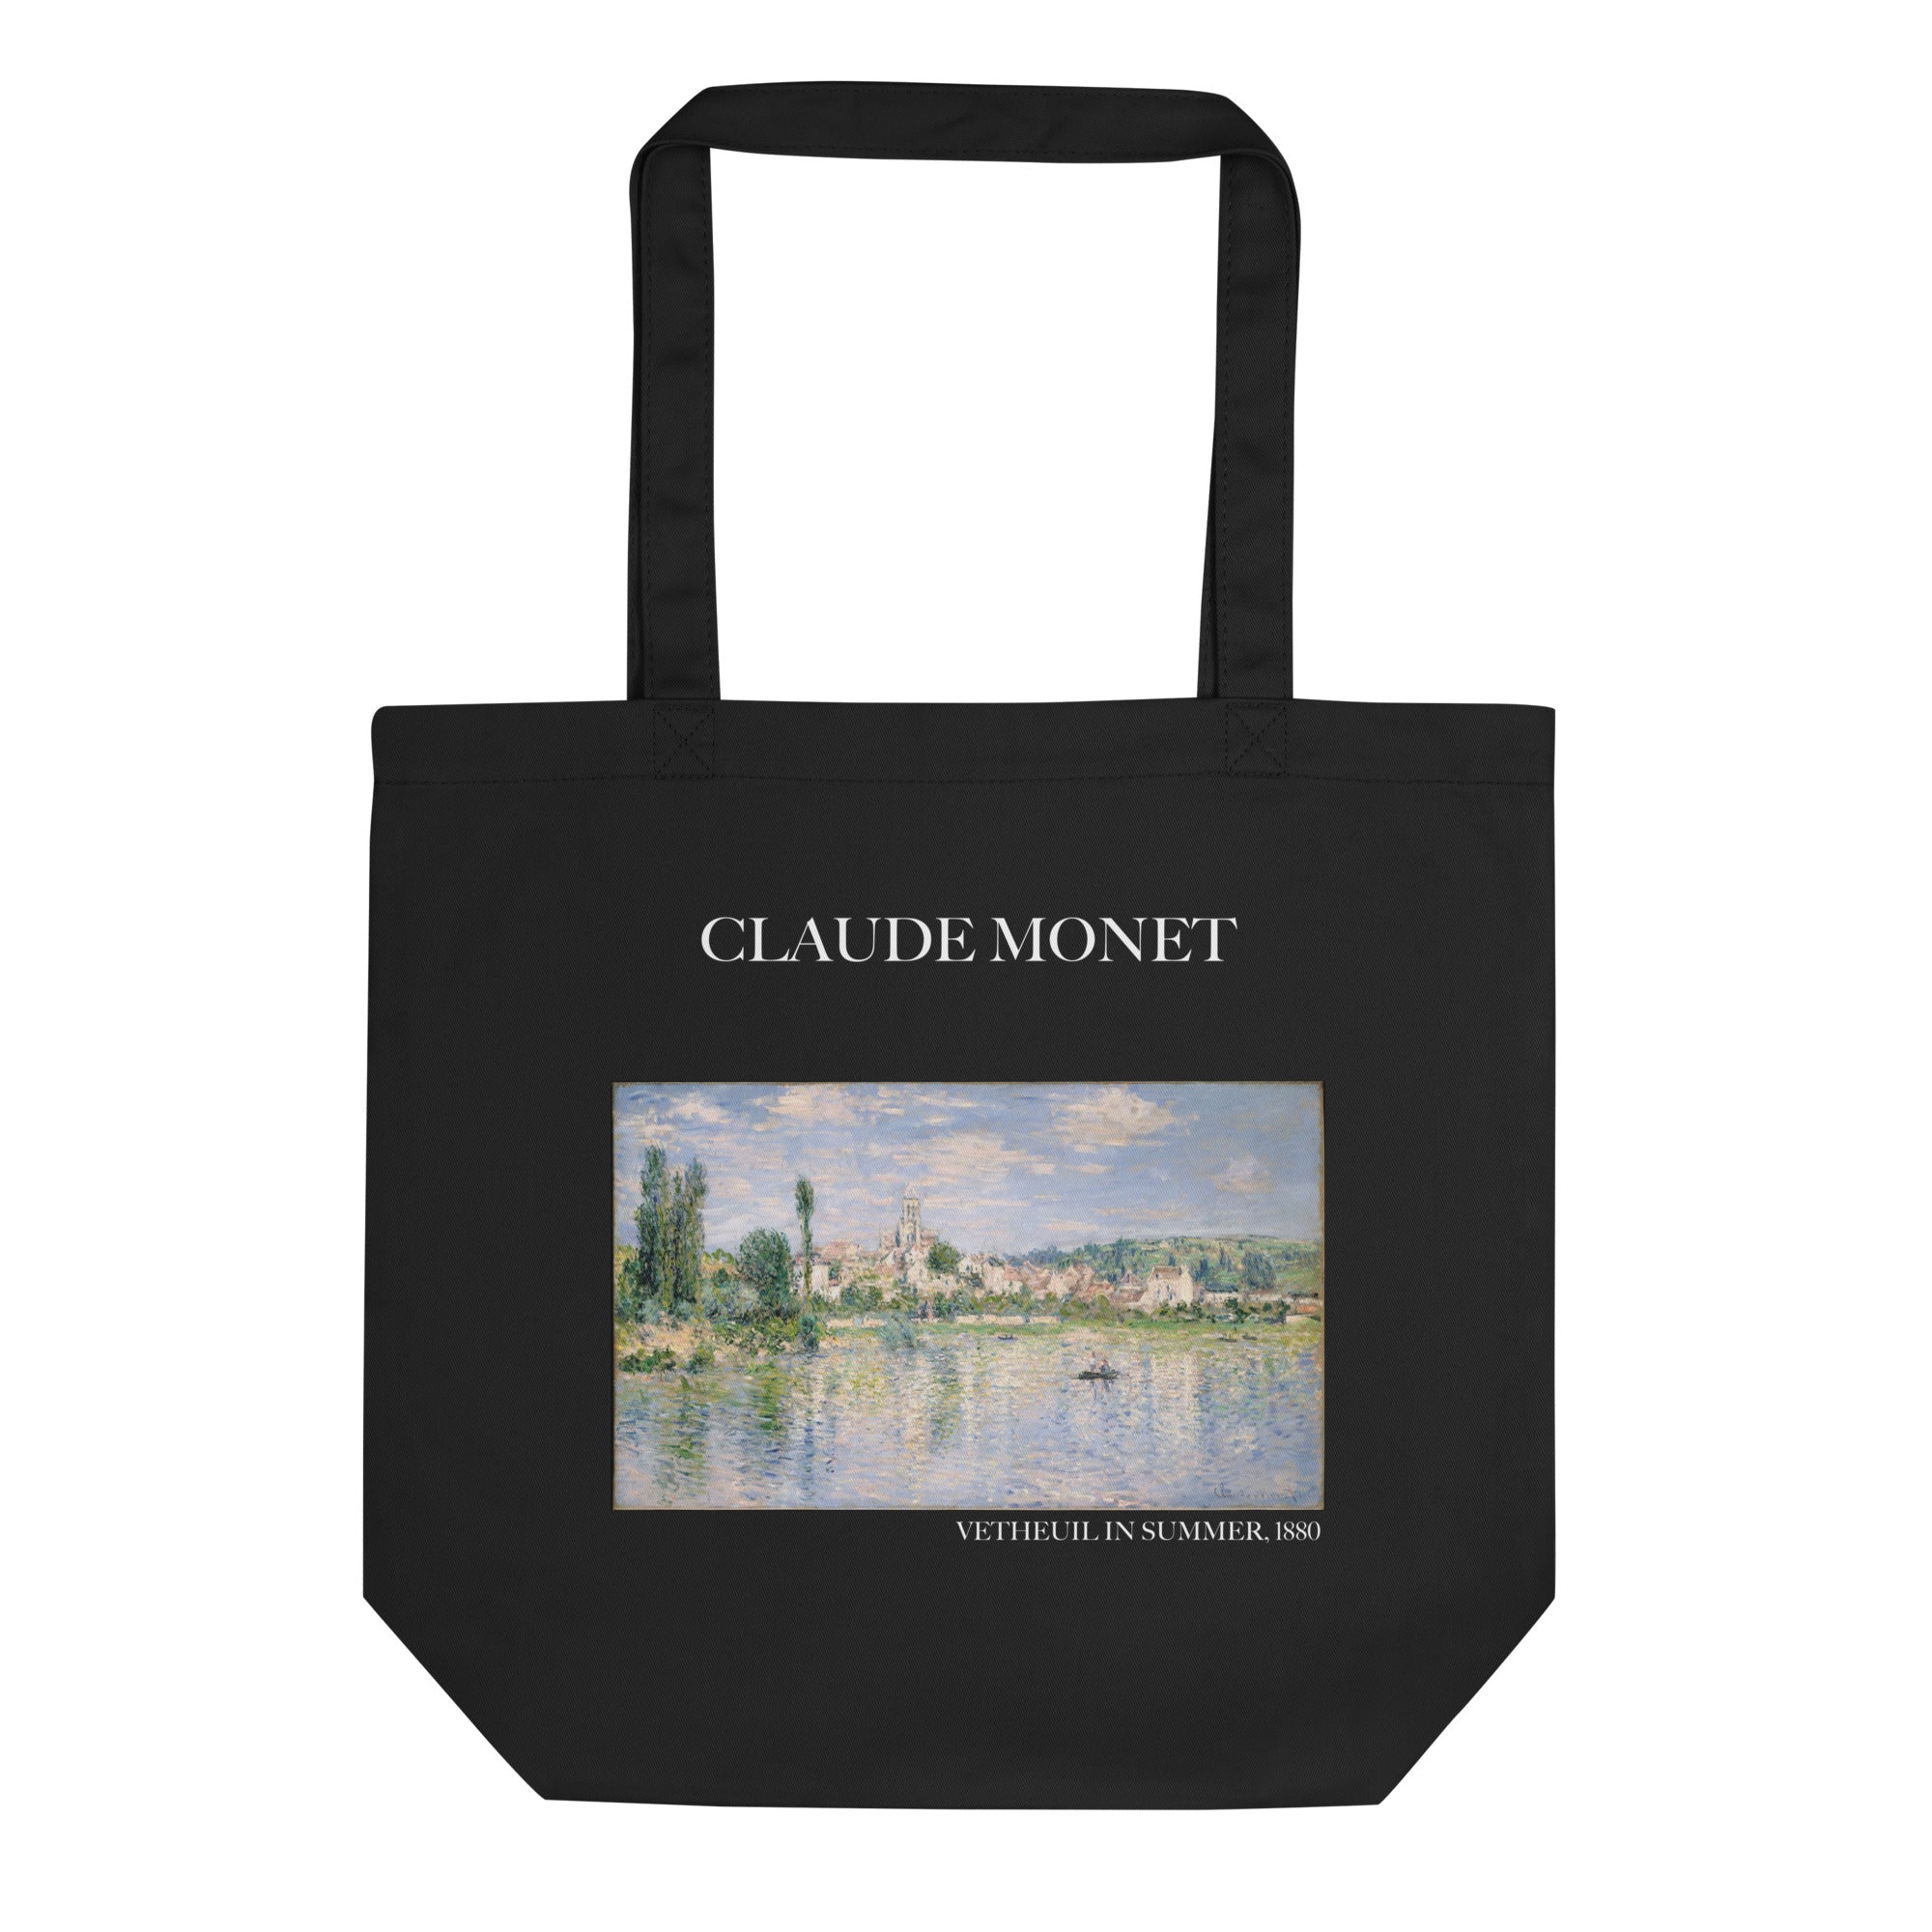 Claude Monet 'Vetheuil im Sommer' berühmtes Gemälde Tragetasche | Umweltfreundliche Kunst Tragetasche